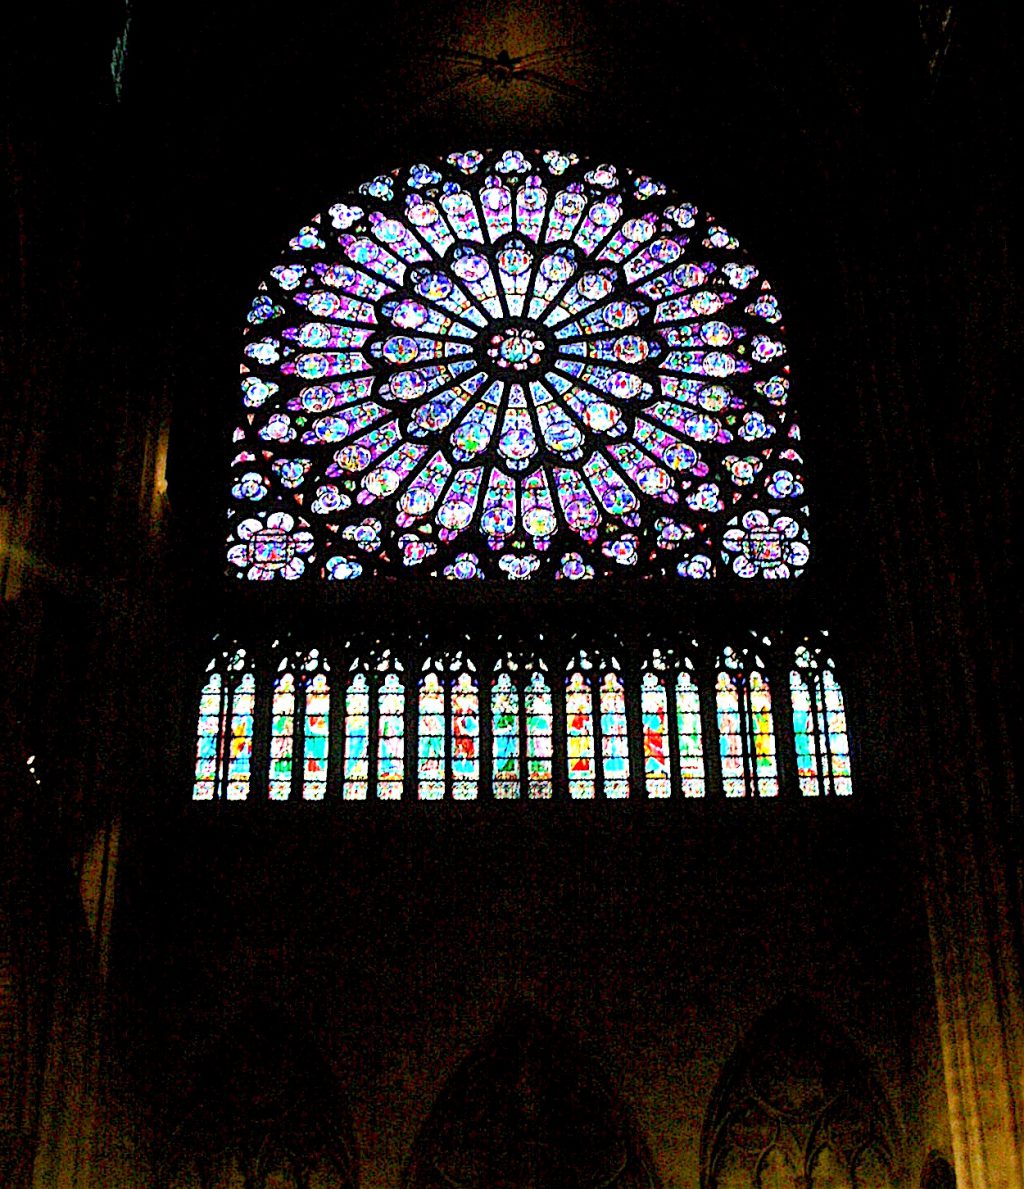 Cathédrale Notre-Dame de Paris パリ・ノートルダム大聖堂、ステンドグラス